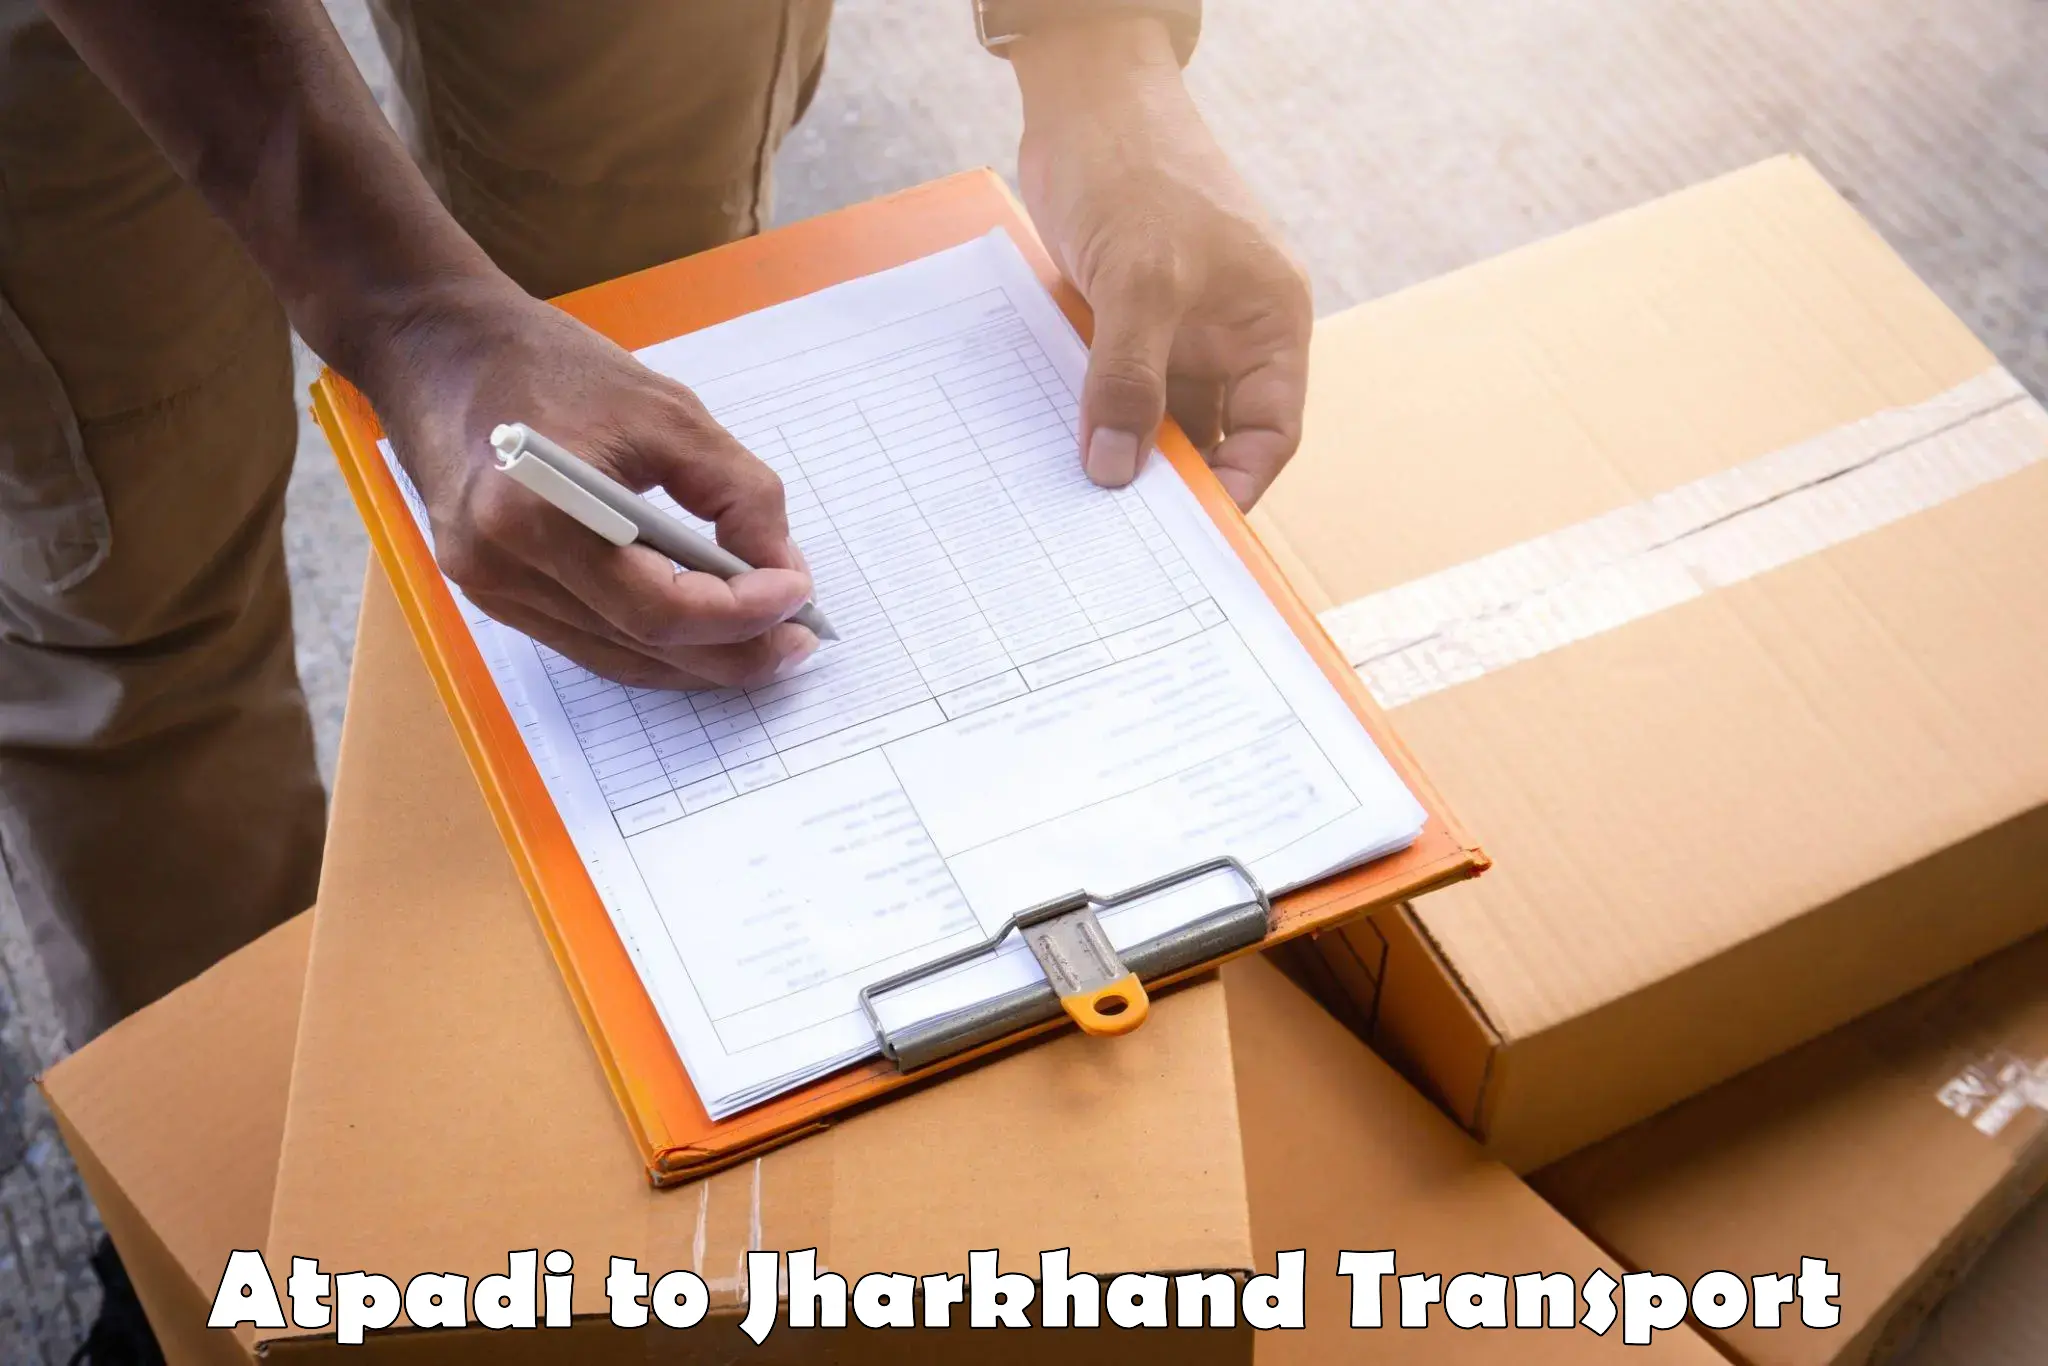 Furniture transport service Atpadi to Madhupur